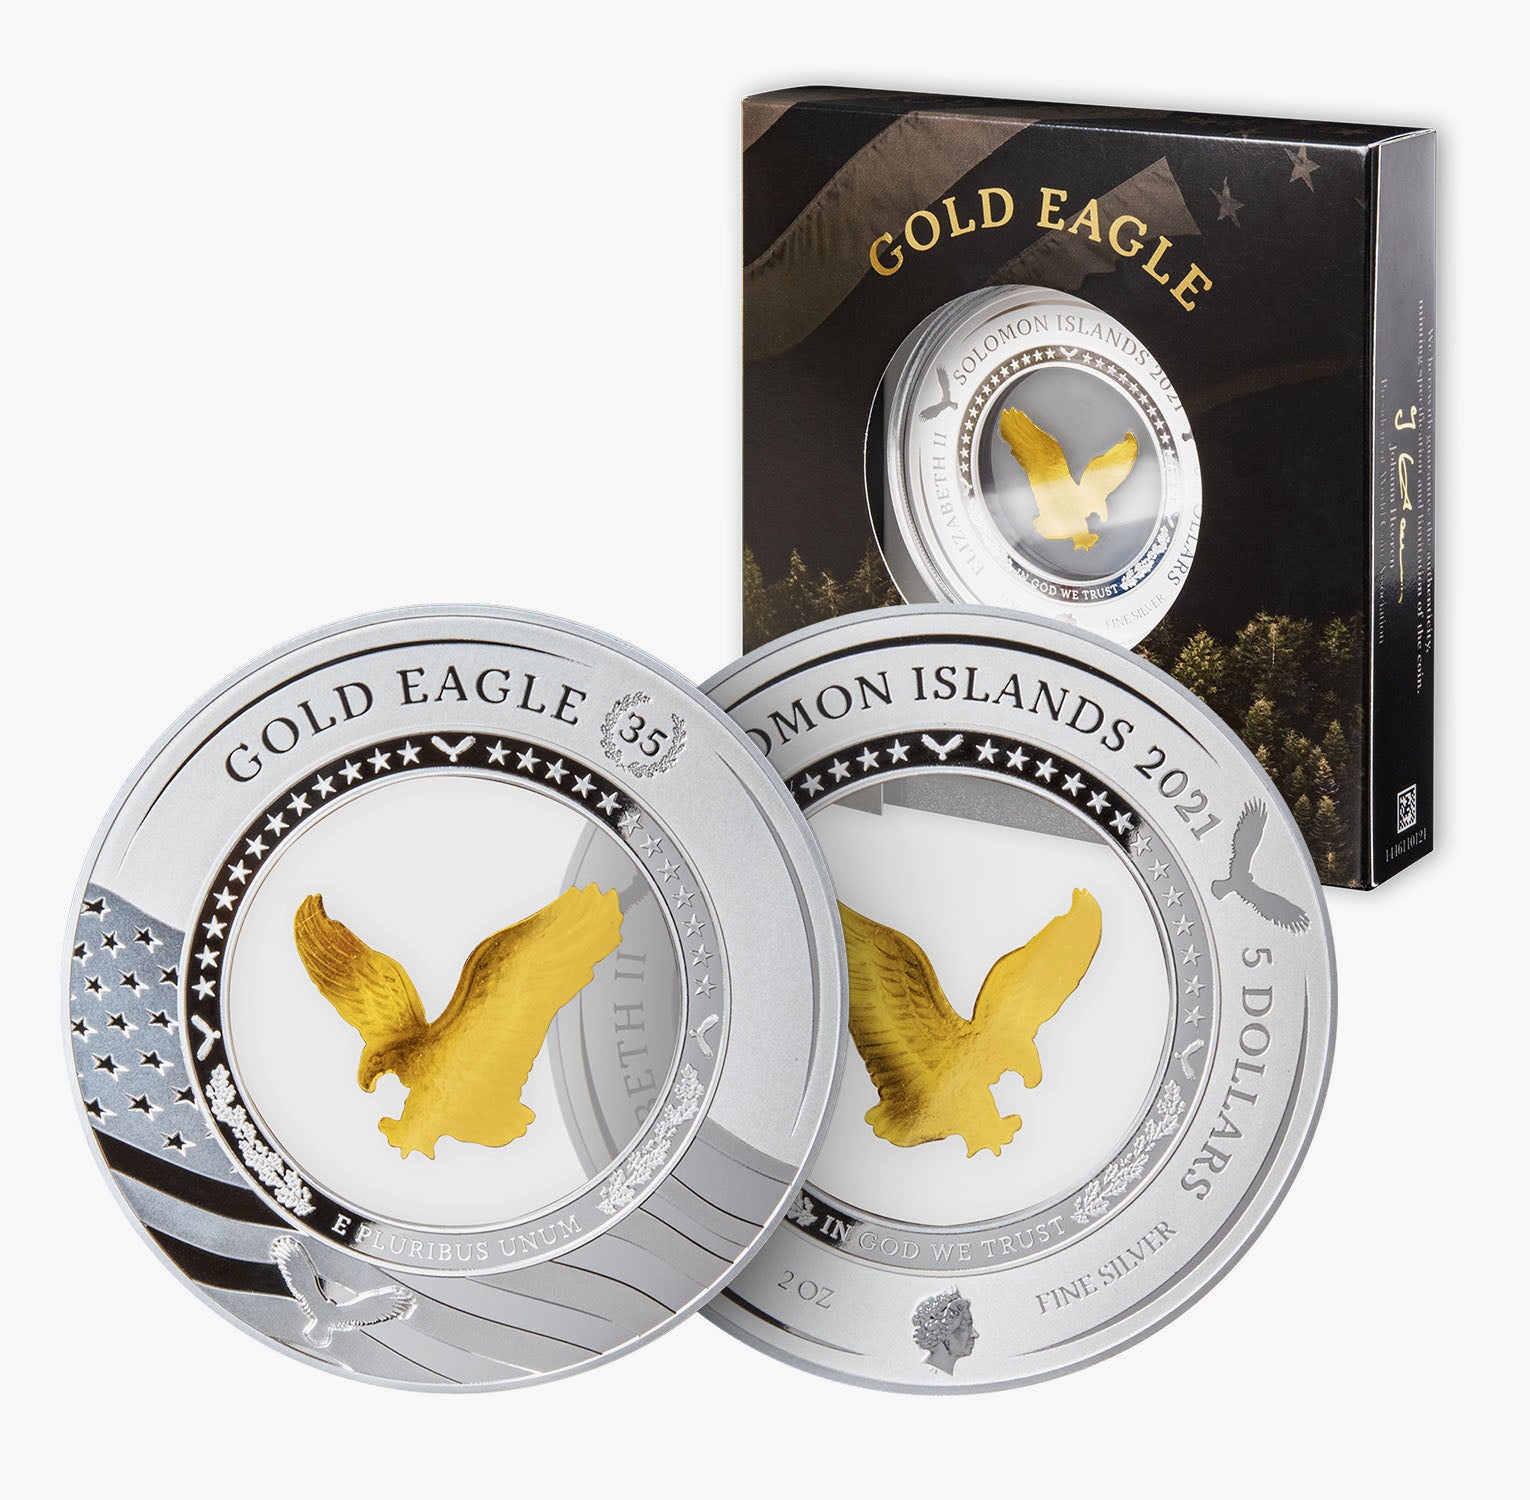 The Gold Eagle 2oz Silver Coin